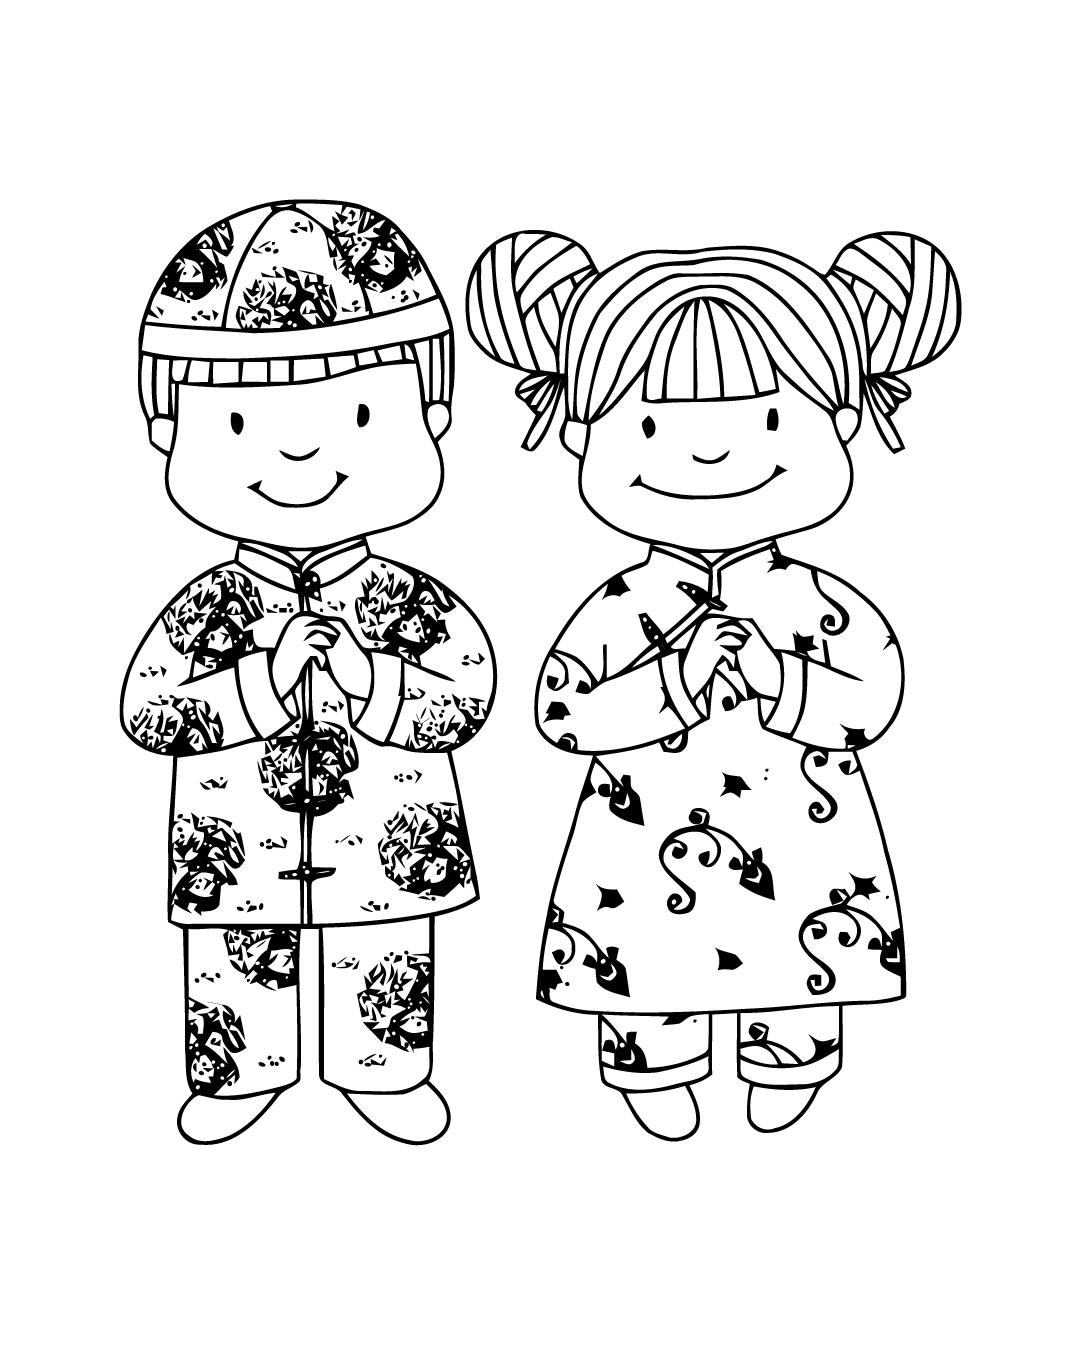 2 niños pequeños listos para celebrar el Año Nuevo chino